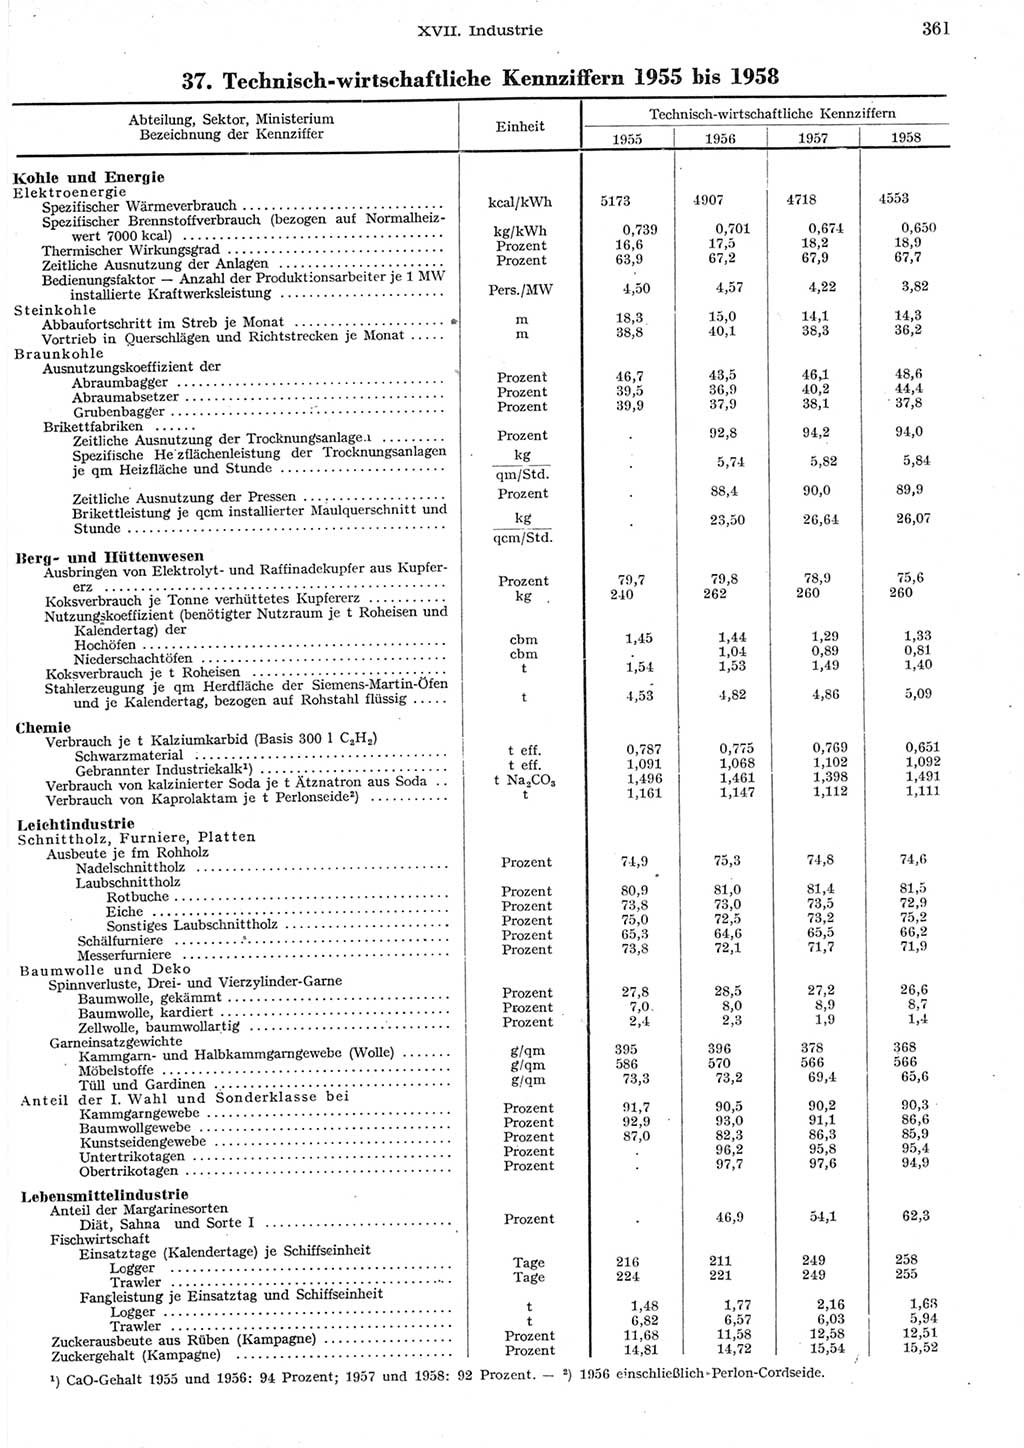 Statistisches Jahrbuch der Deutschen Demokratischen Republik (DDR) 1958, Seite 361 (Stat. Jb. DDR 1958, S. 361)